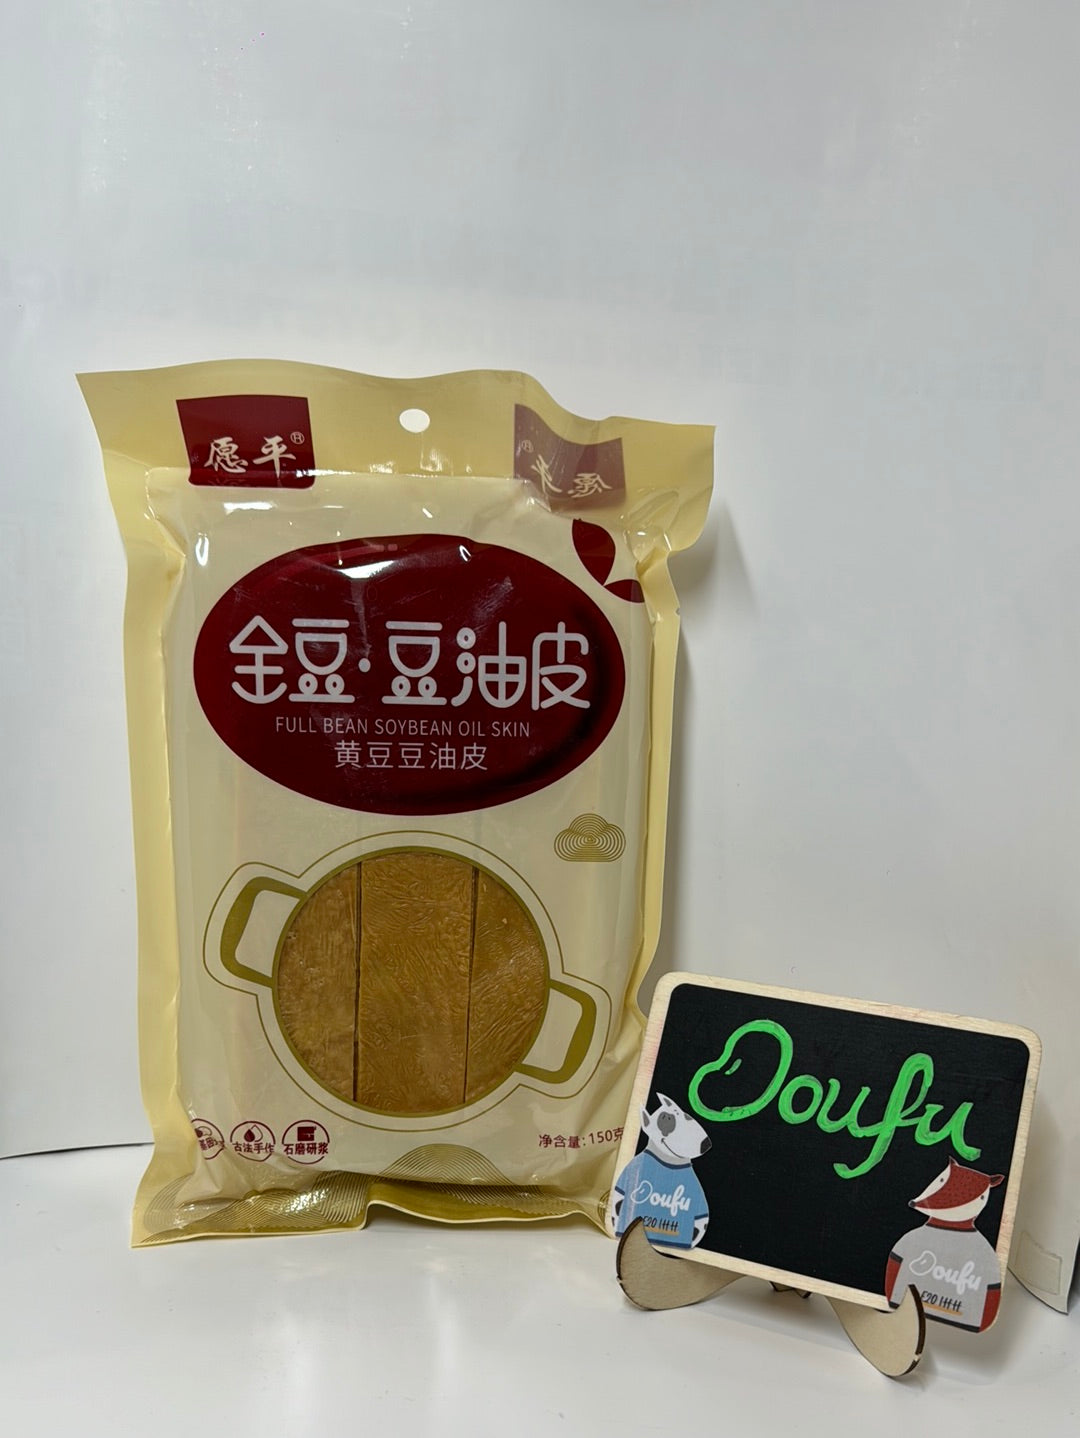 Full bean soybean oil skin 愿平 豆油皮 150g